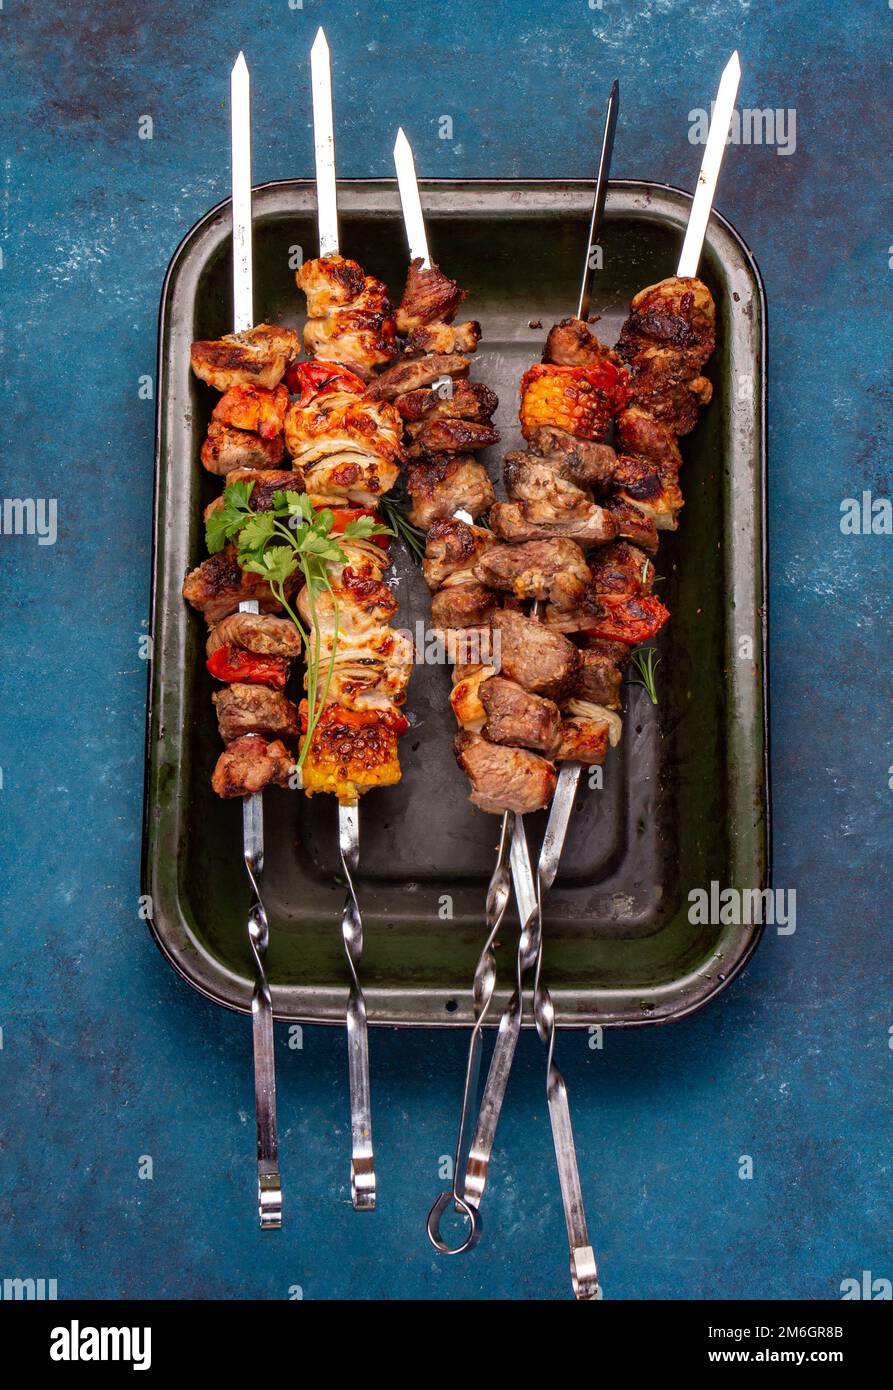 Brochettes de viande de porc, de poulet et de légumes grillées au barbecue sur plateau Vue de dessus, plan d'agencement. Arrière-plan bleu. Banque D'Images